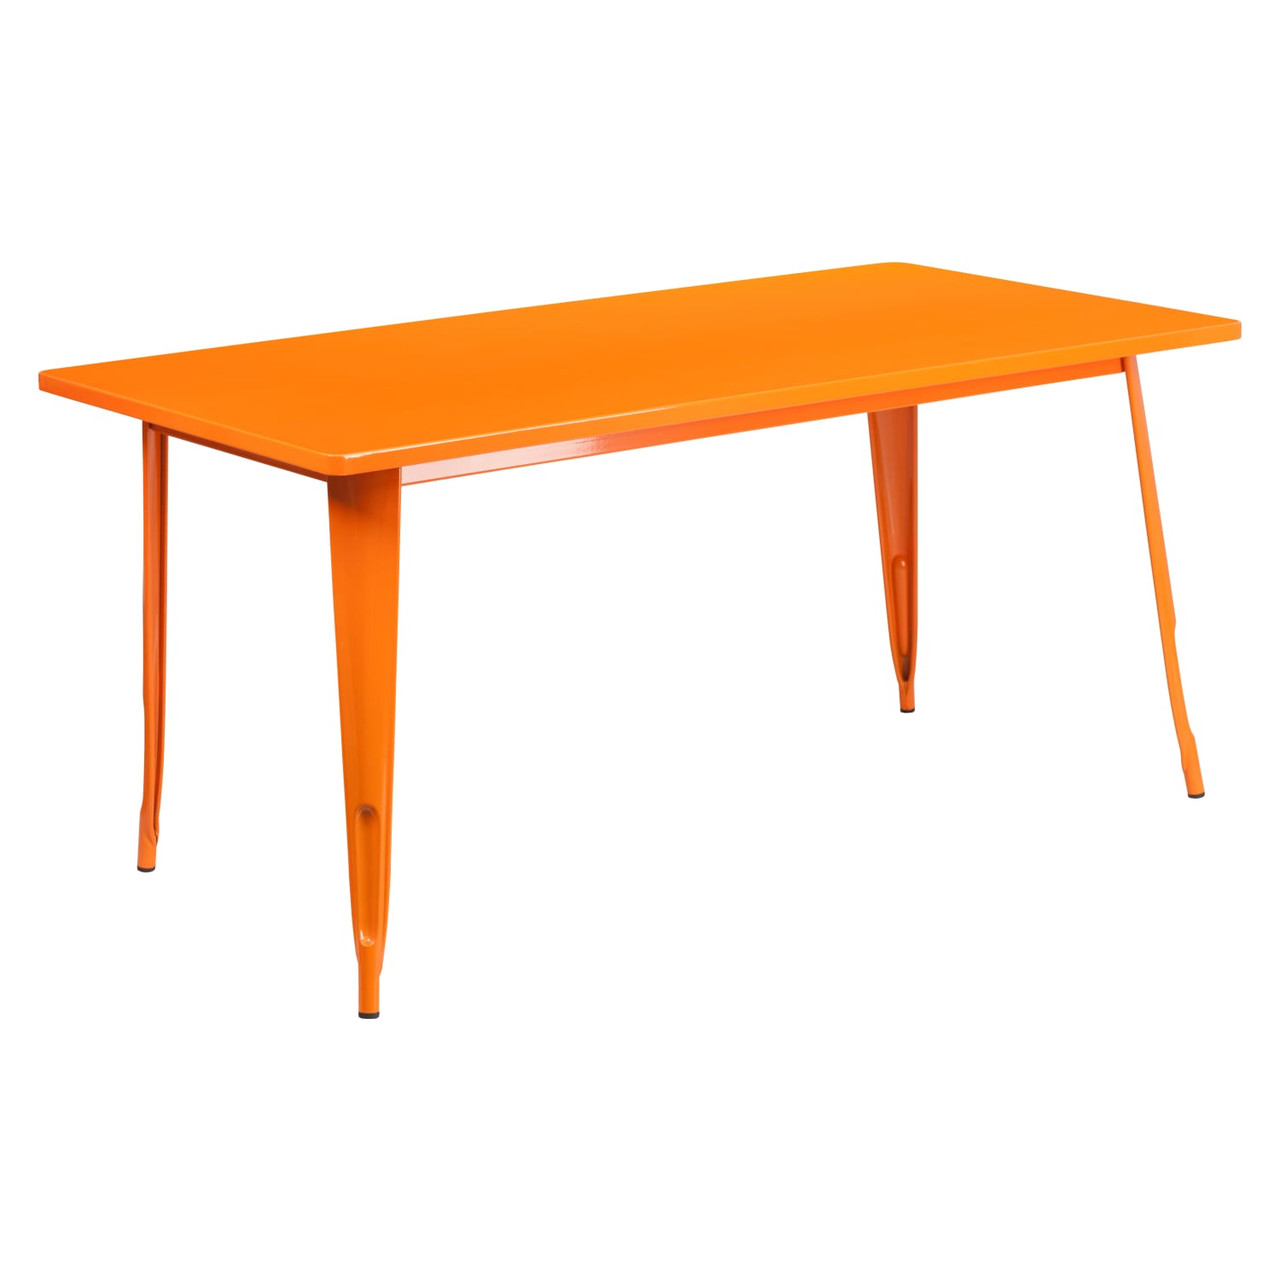 31.5” x 63” Rectangular Orange Metal Indoor-Outdoor Table